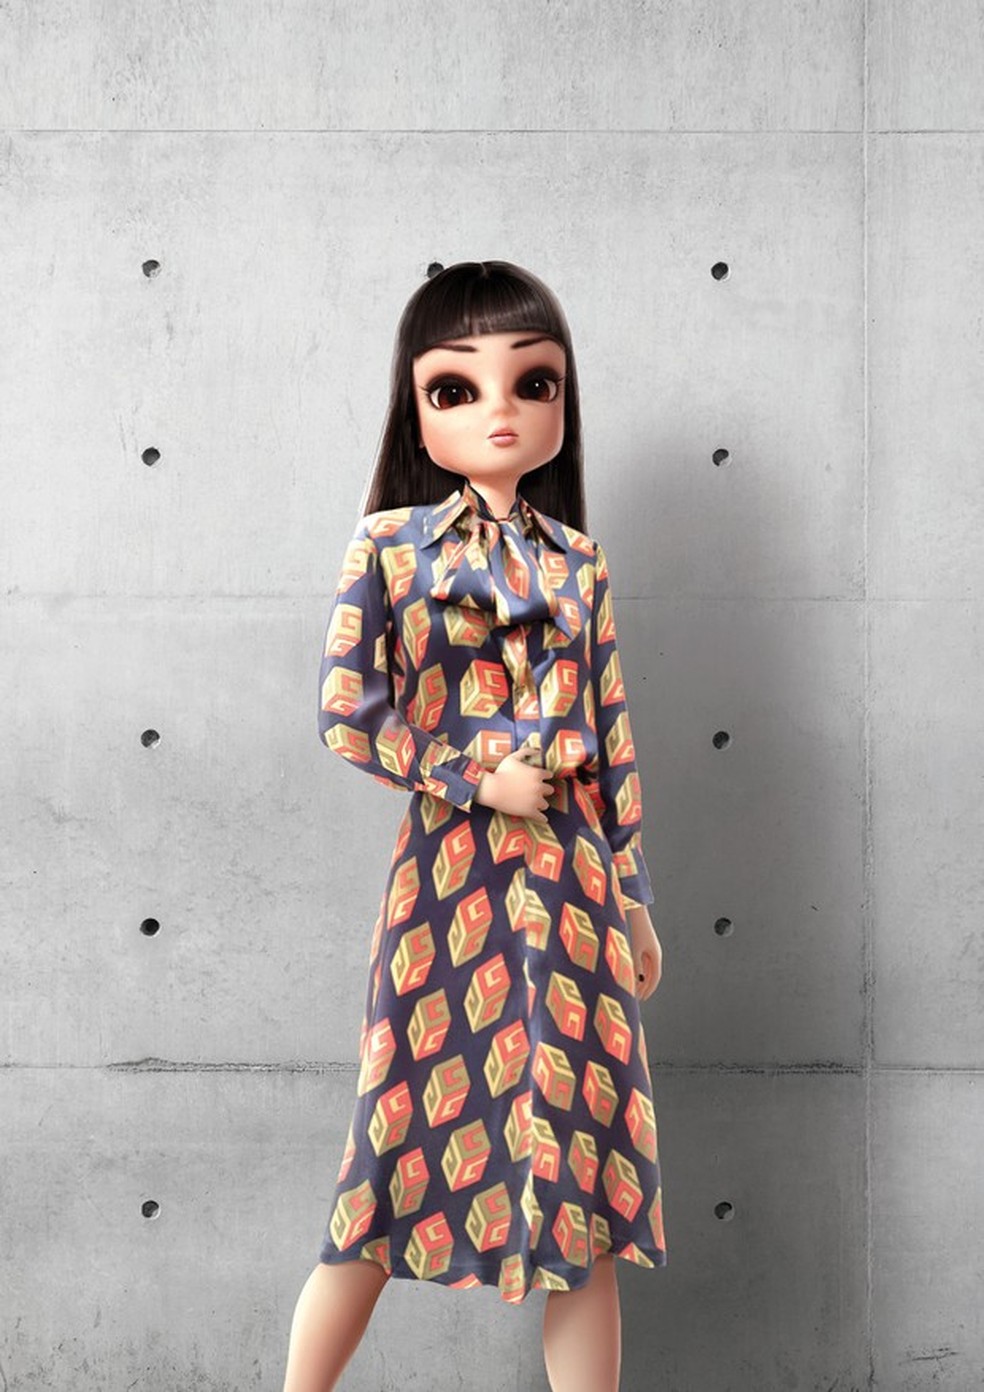 Noonoouri usa vestido do pre-fall 2018 da Gucci (Foto: Joerg Zuber/Divulgação) — Foto: Vogue